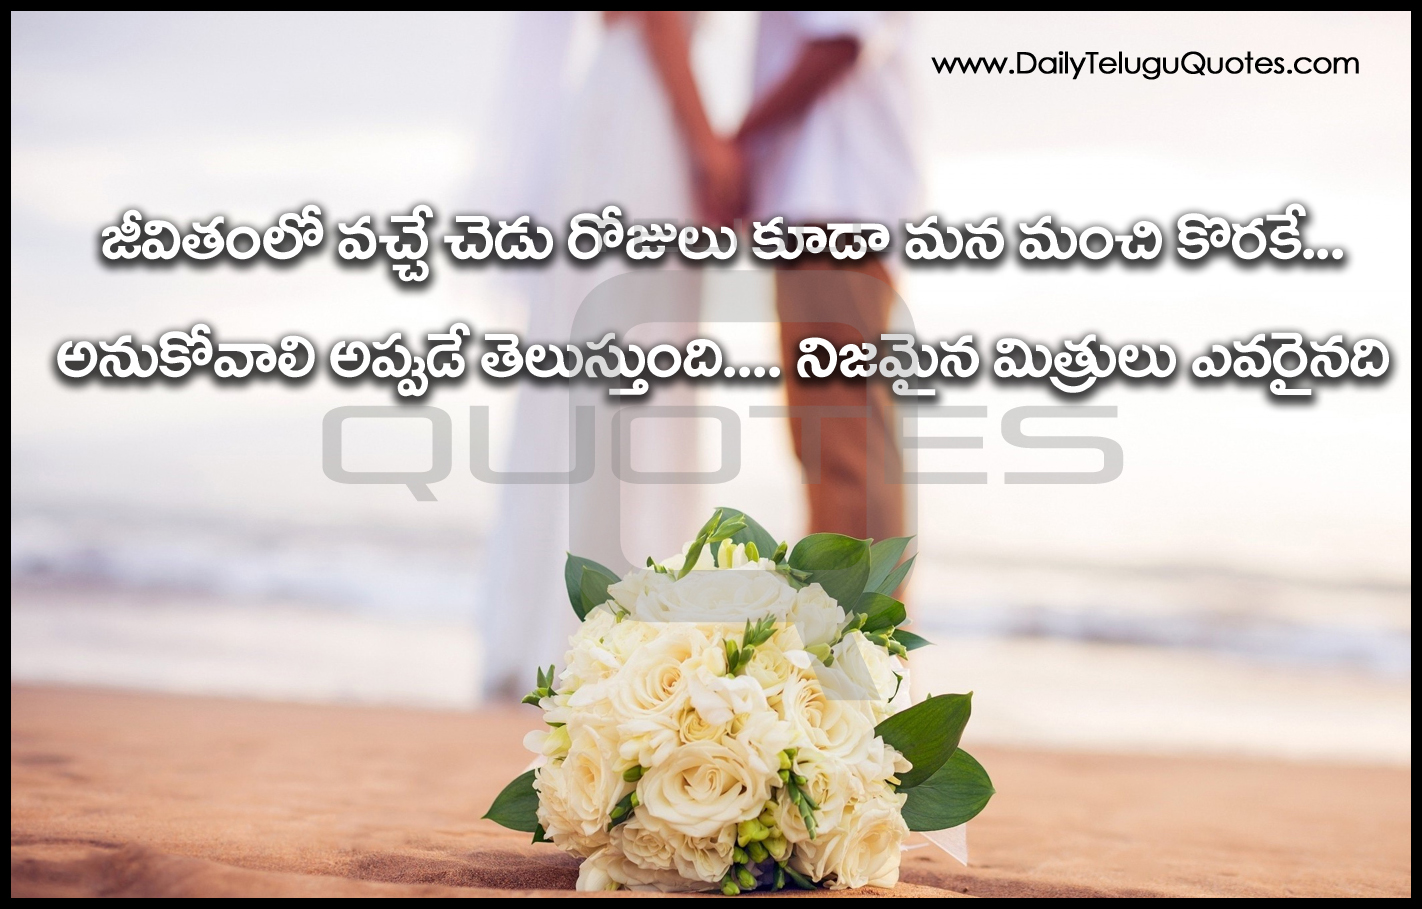 Telugu Friendship Quotations and Life Inspiraiton Quotes in Telugu